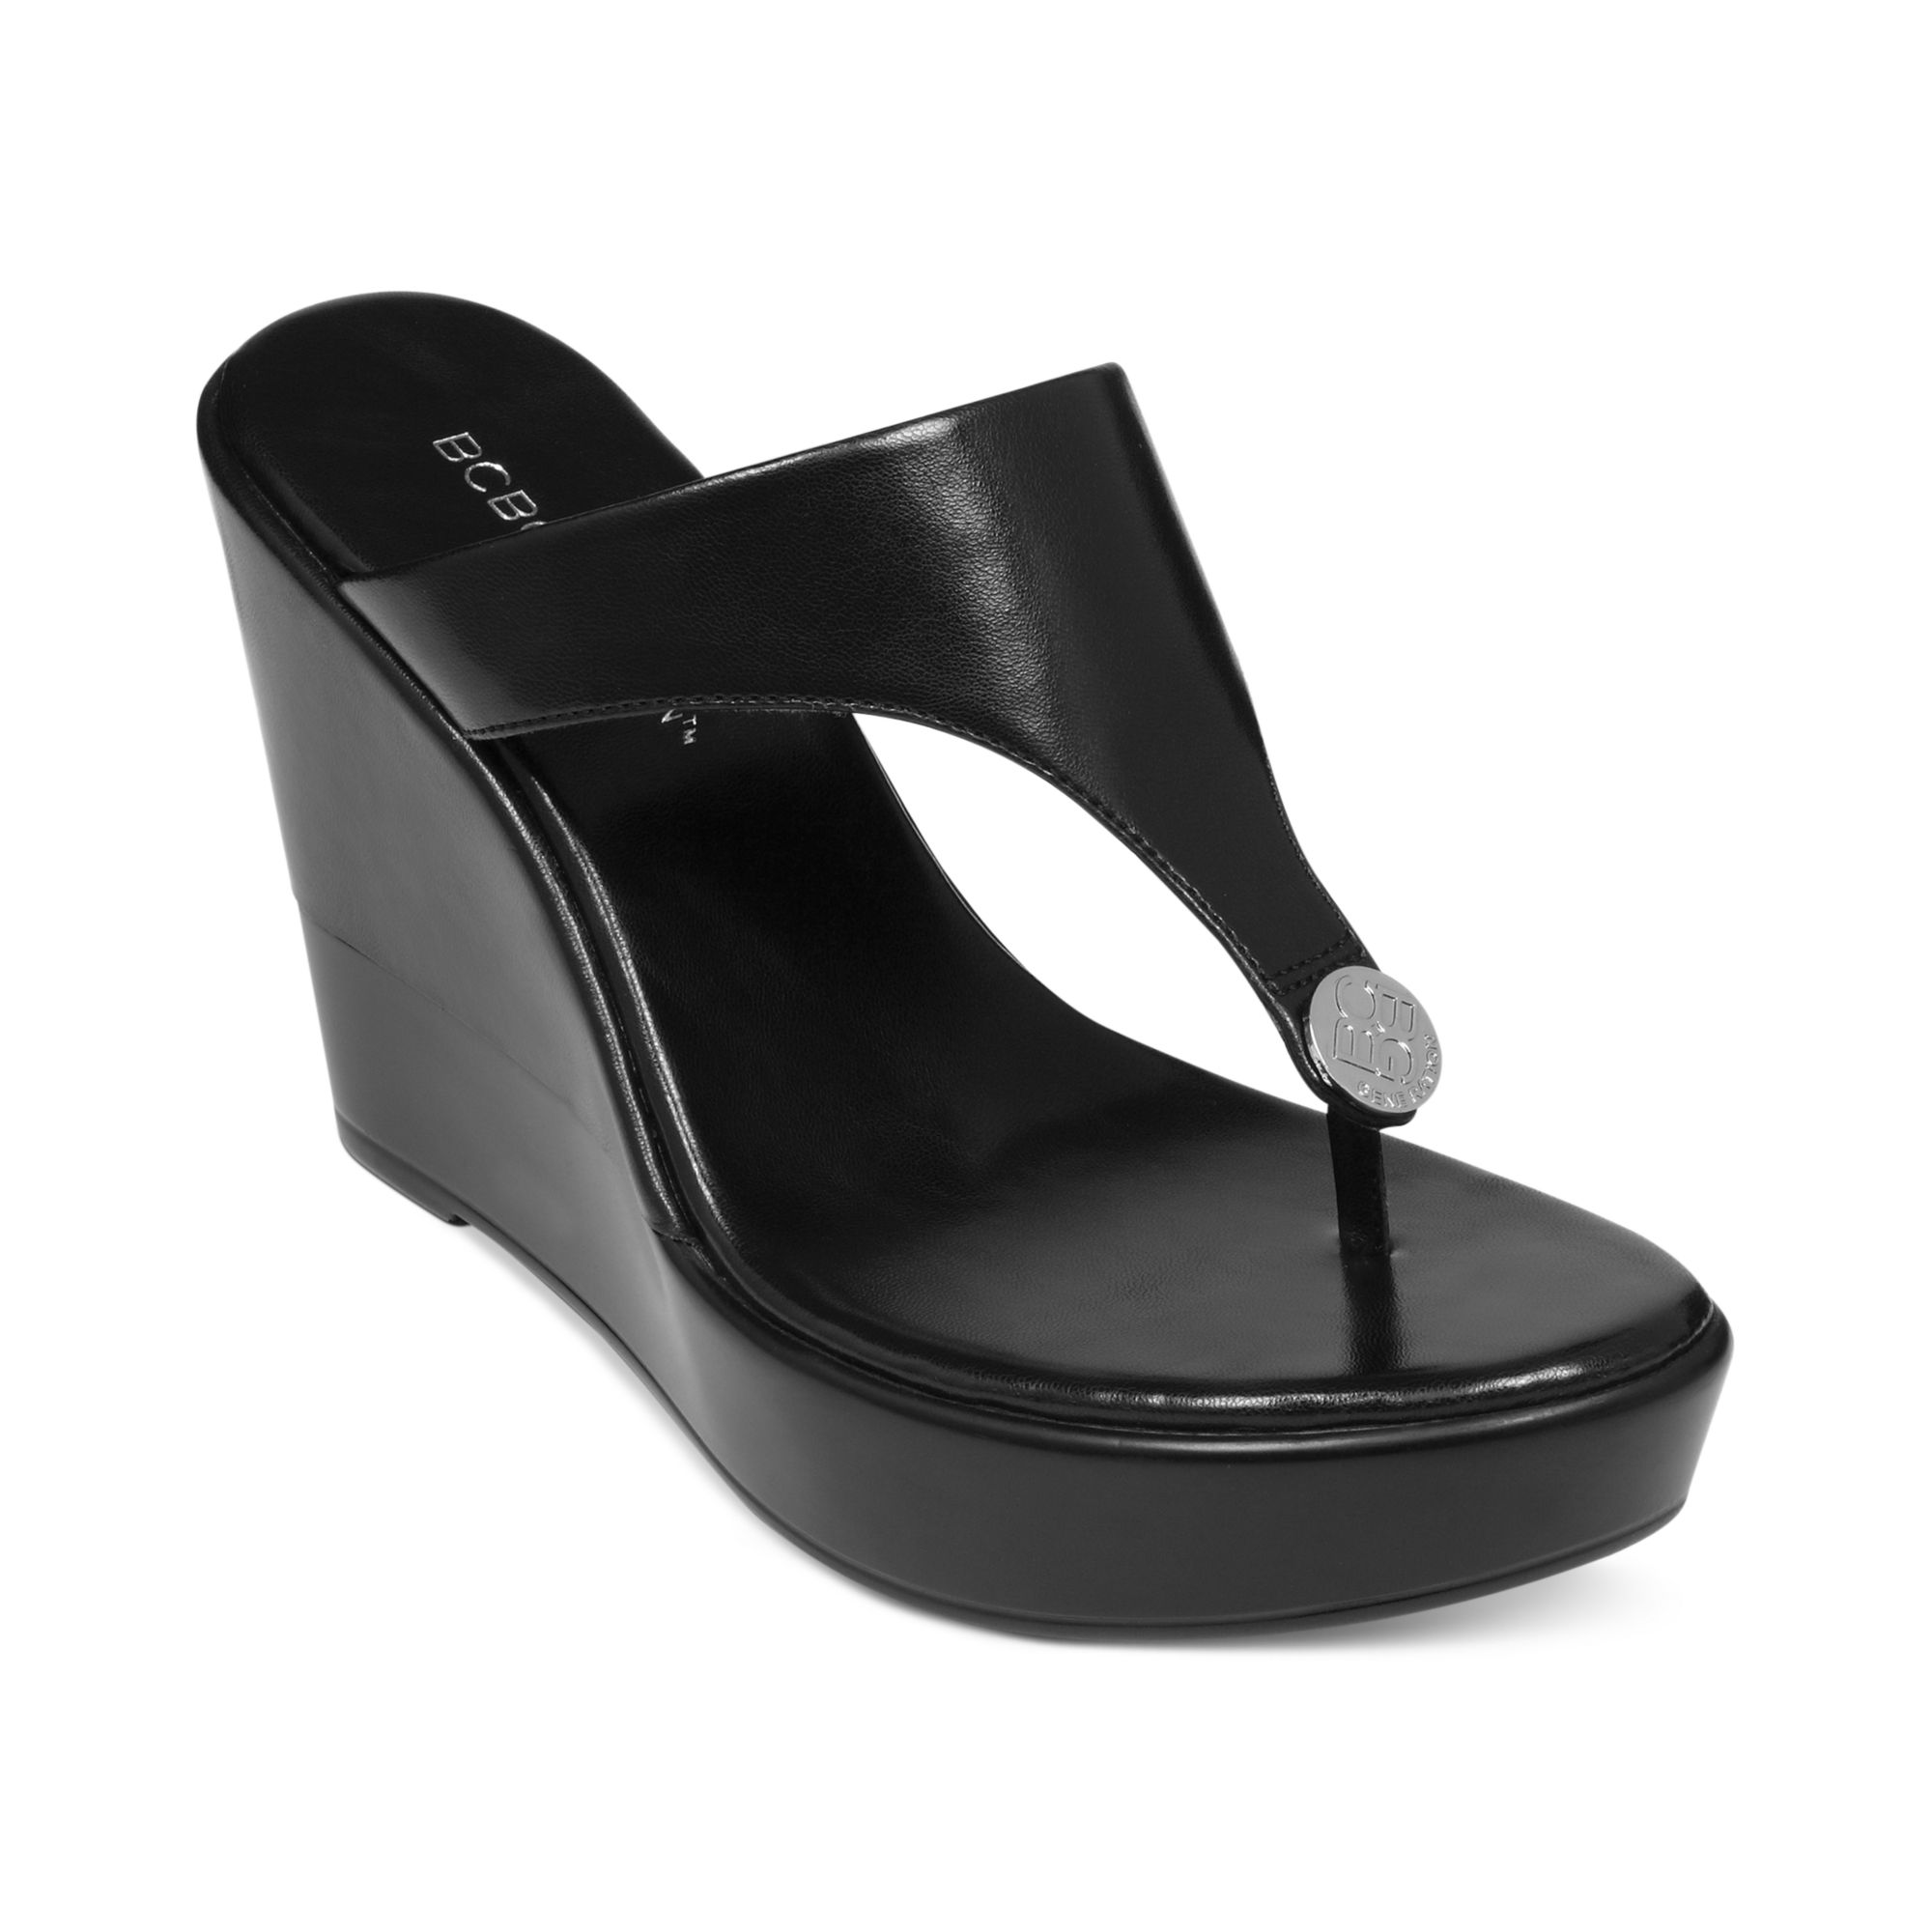 Appeal Wedge Sandals - Luxury Black